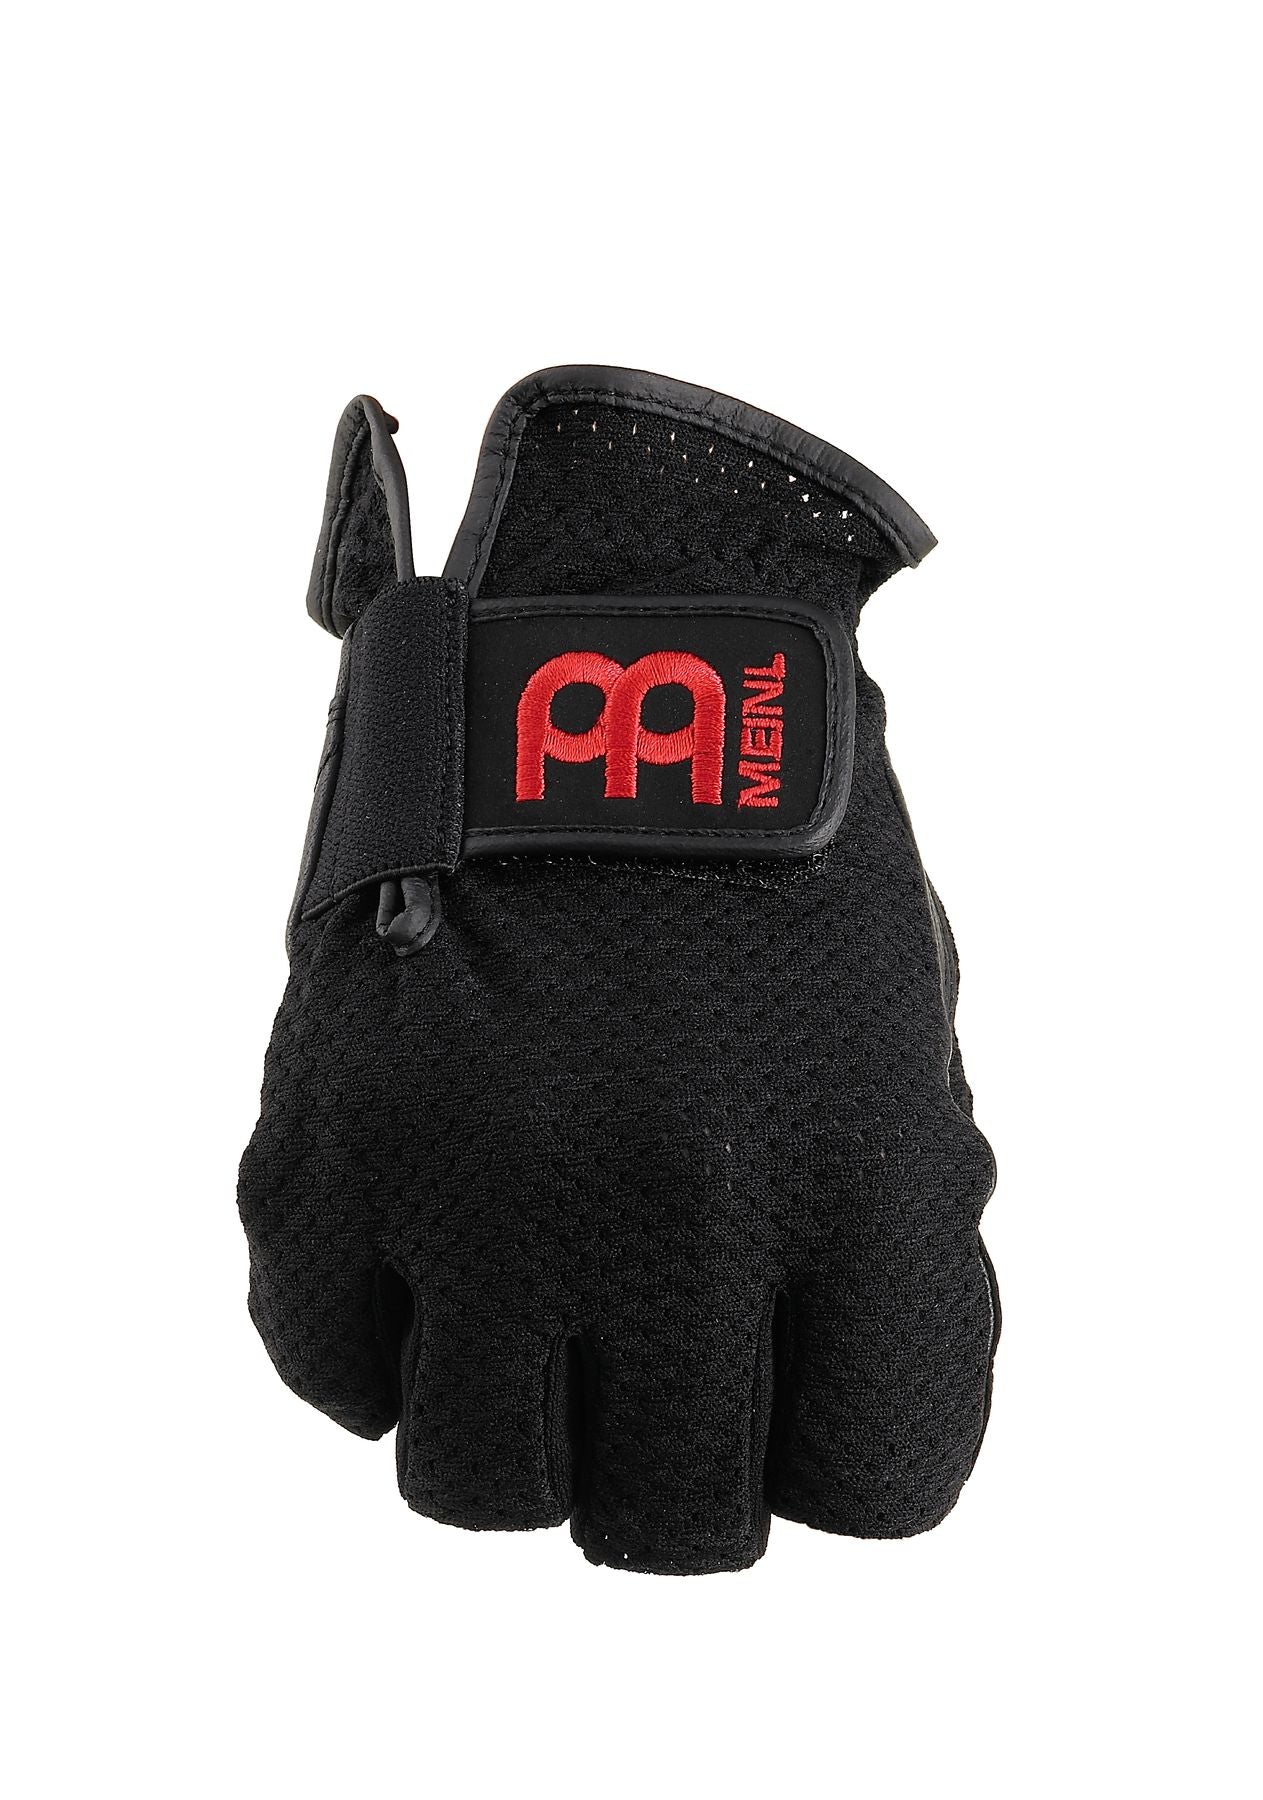 Meinl Drummer Fingerless Black Gloves - Large